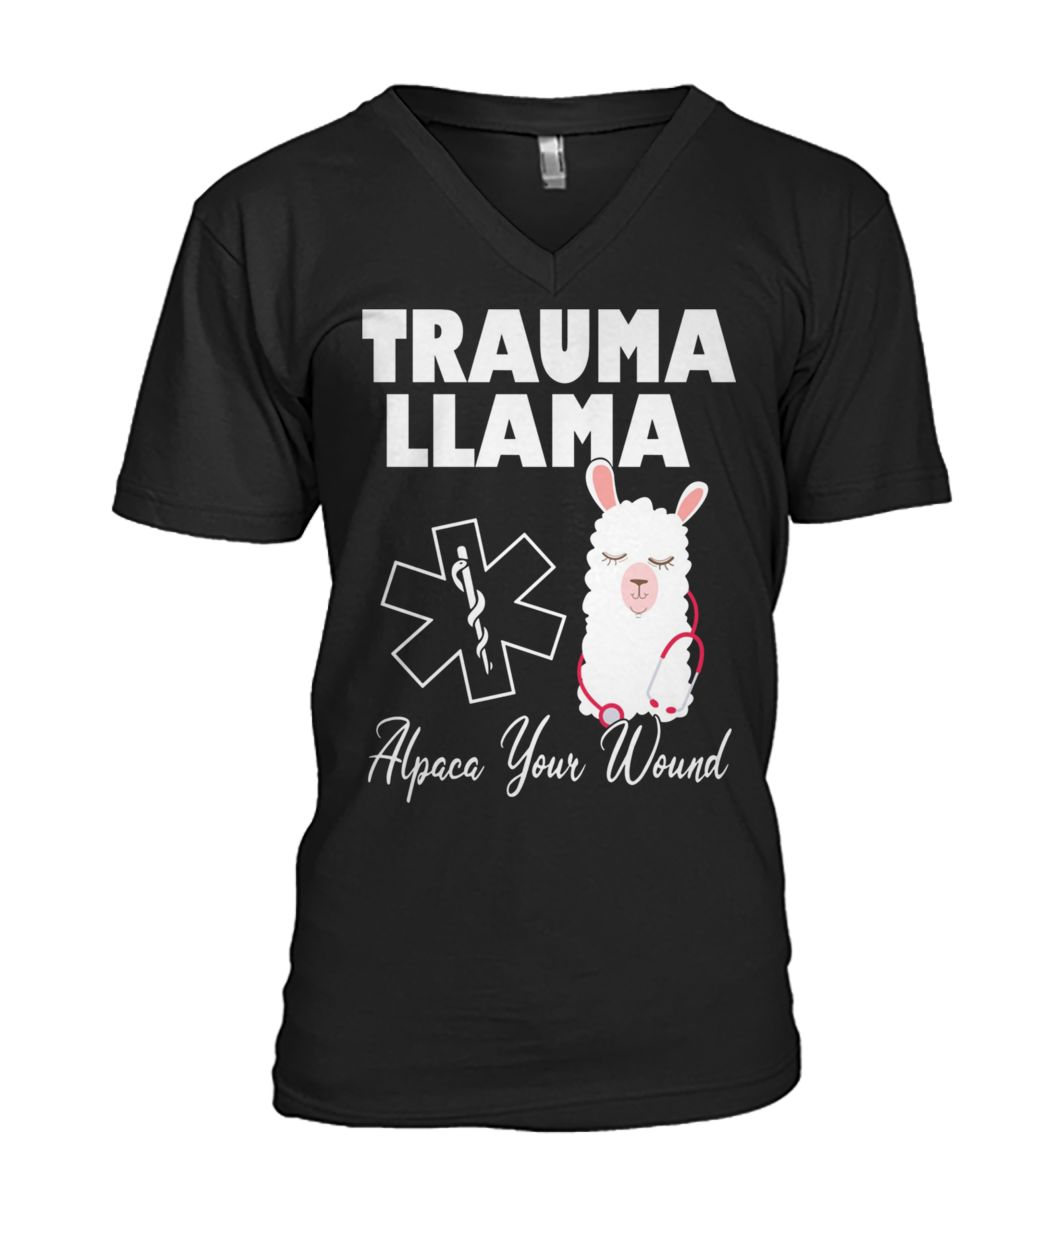 Trauma llama alpaca your wound nurse mens v-neck